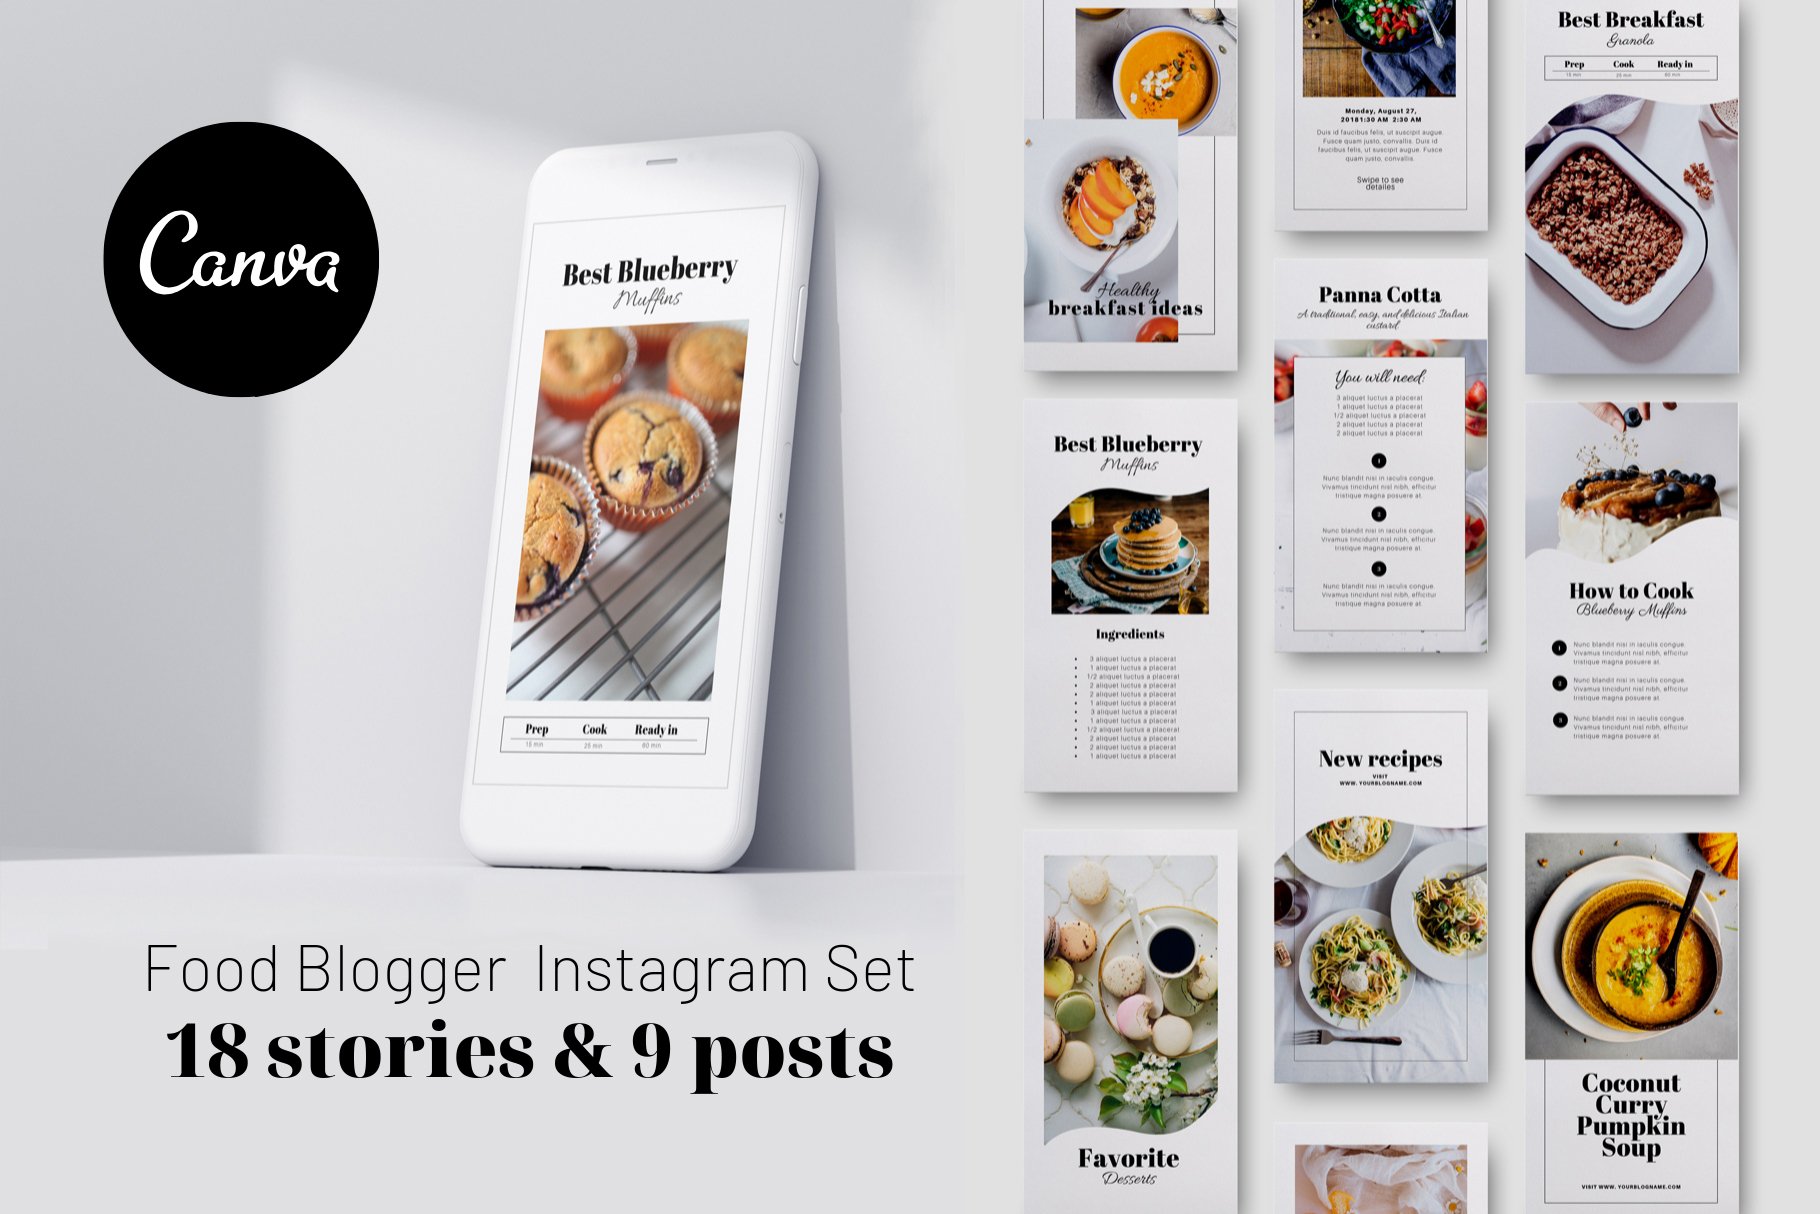 Food Blogger Instagram set CANVA cover image.